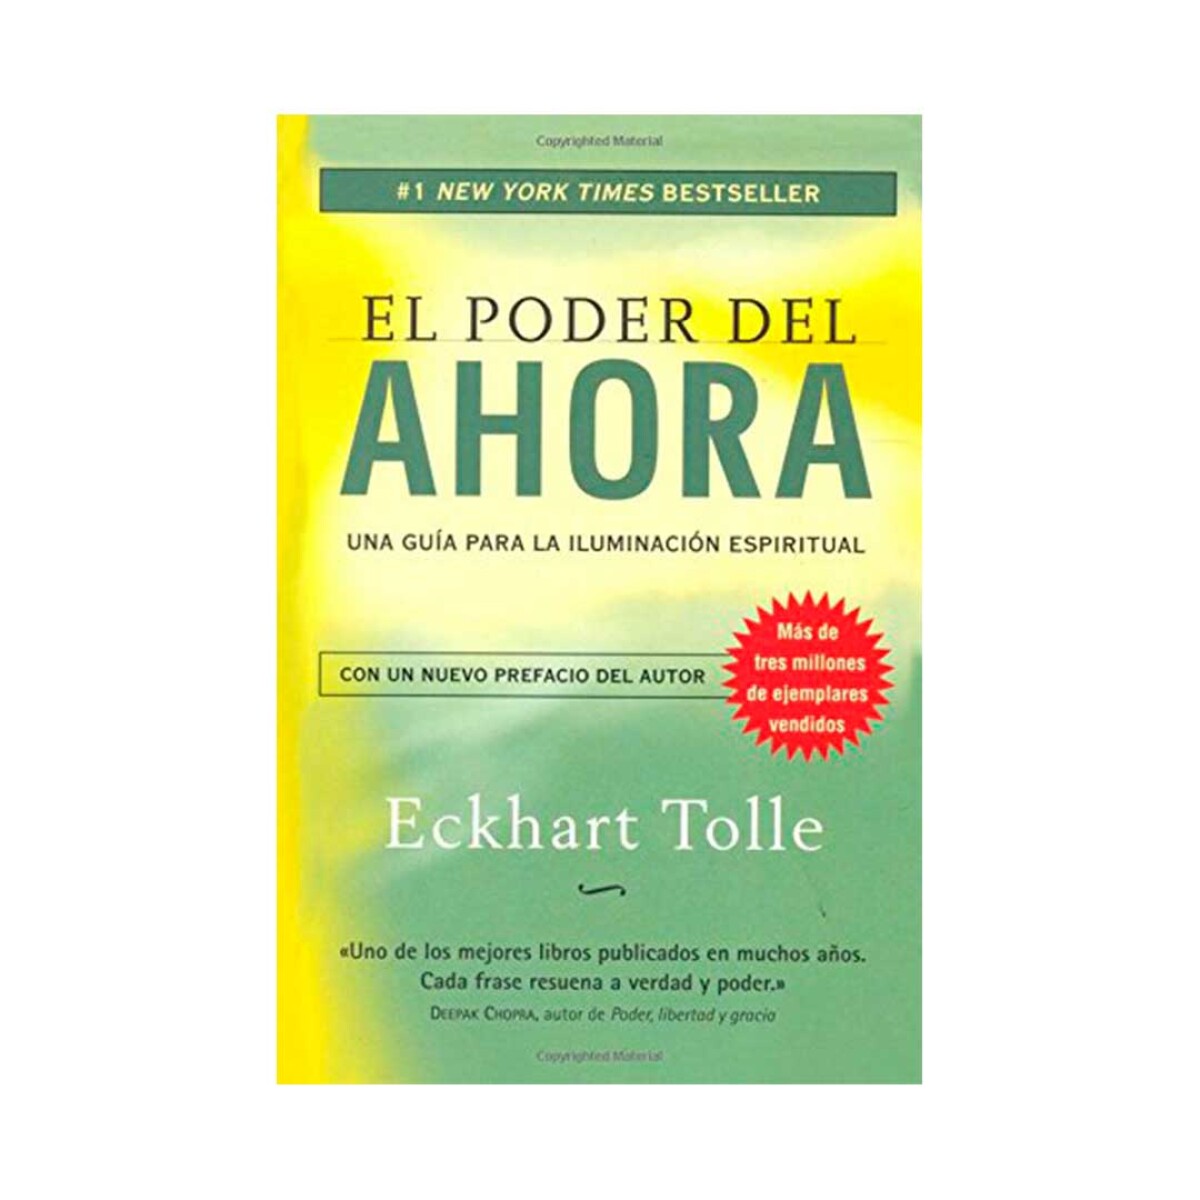 Libro El poder del Ahora by Eckhart Tolle - 001 